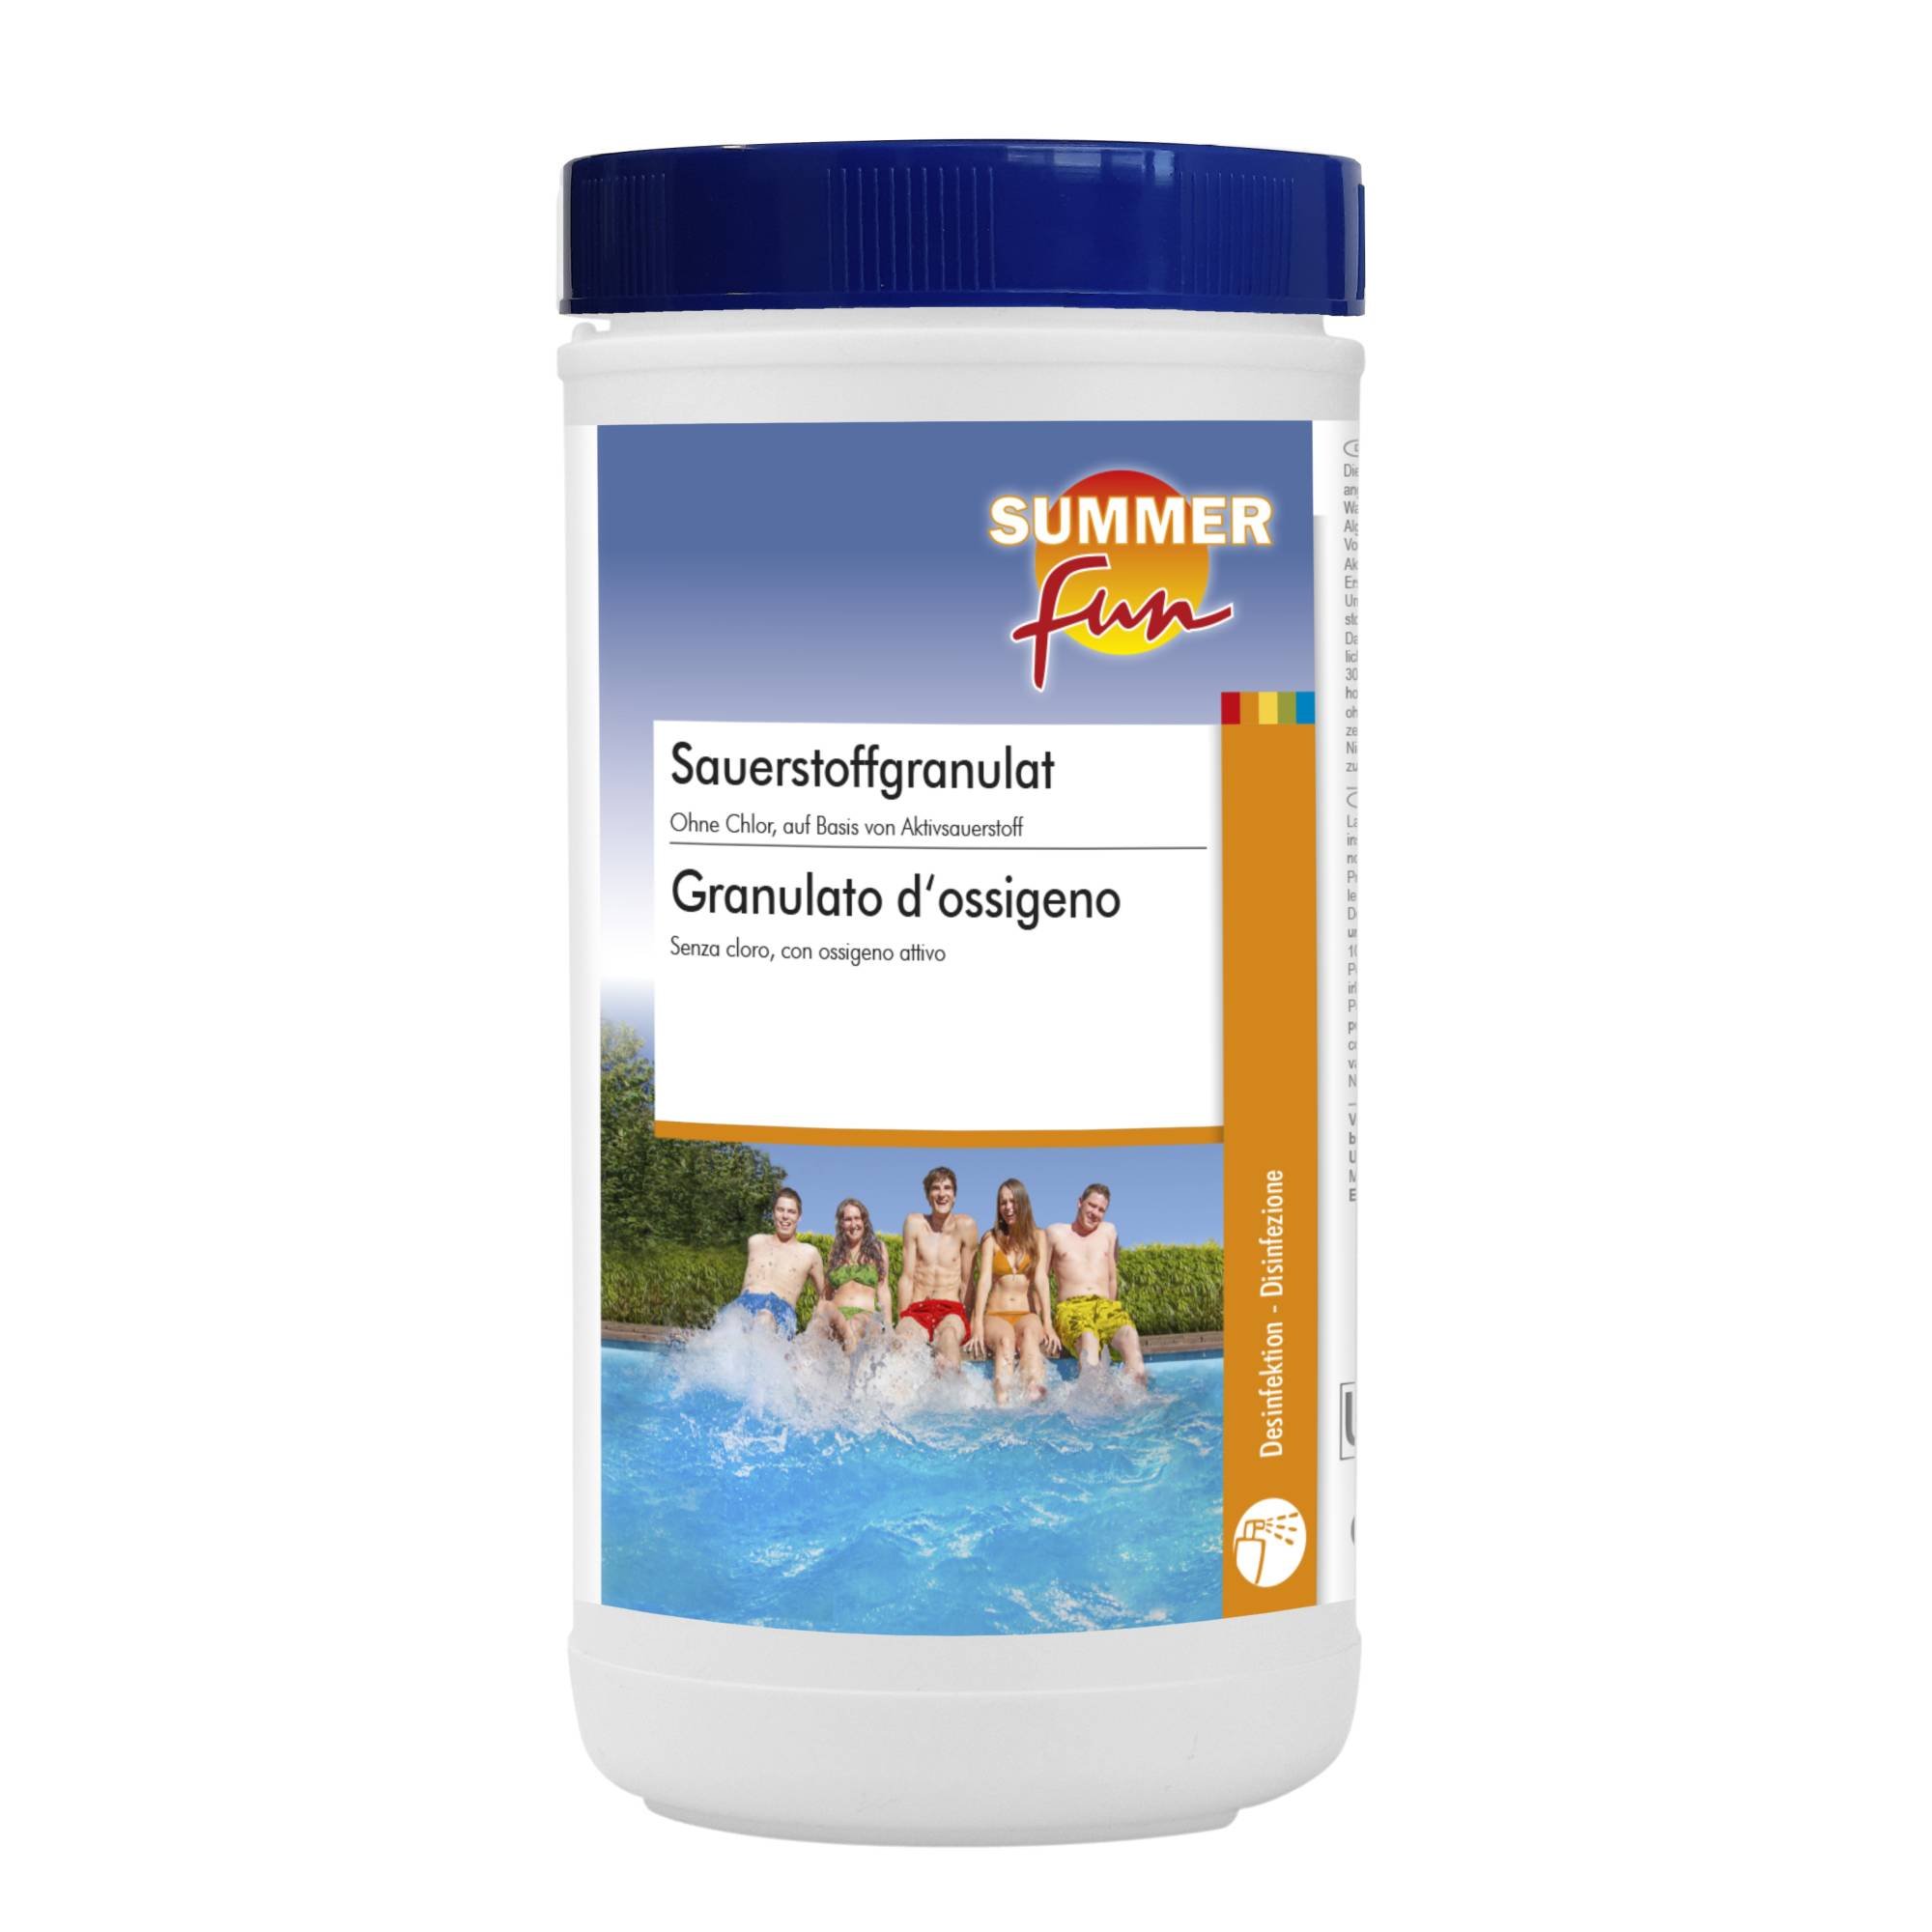 Summer Fun Sauerstoffgranulat - 1 kg